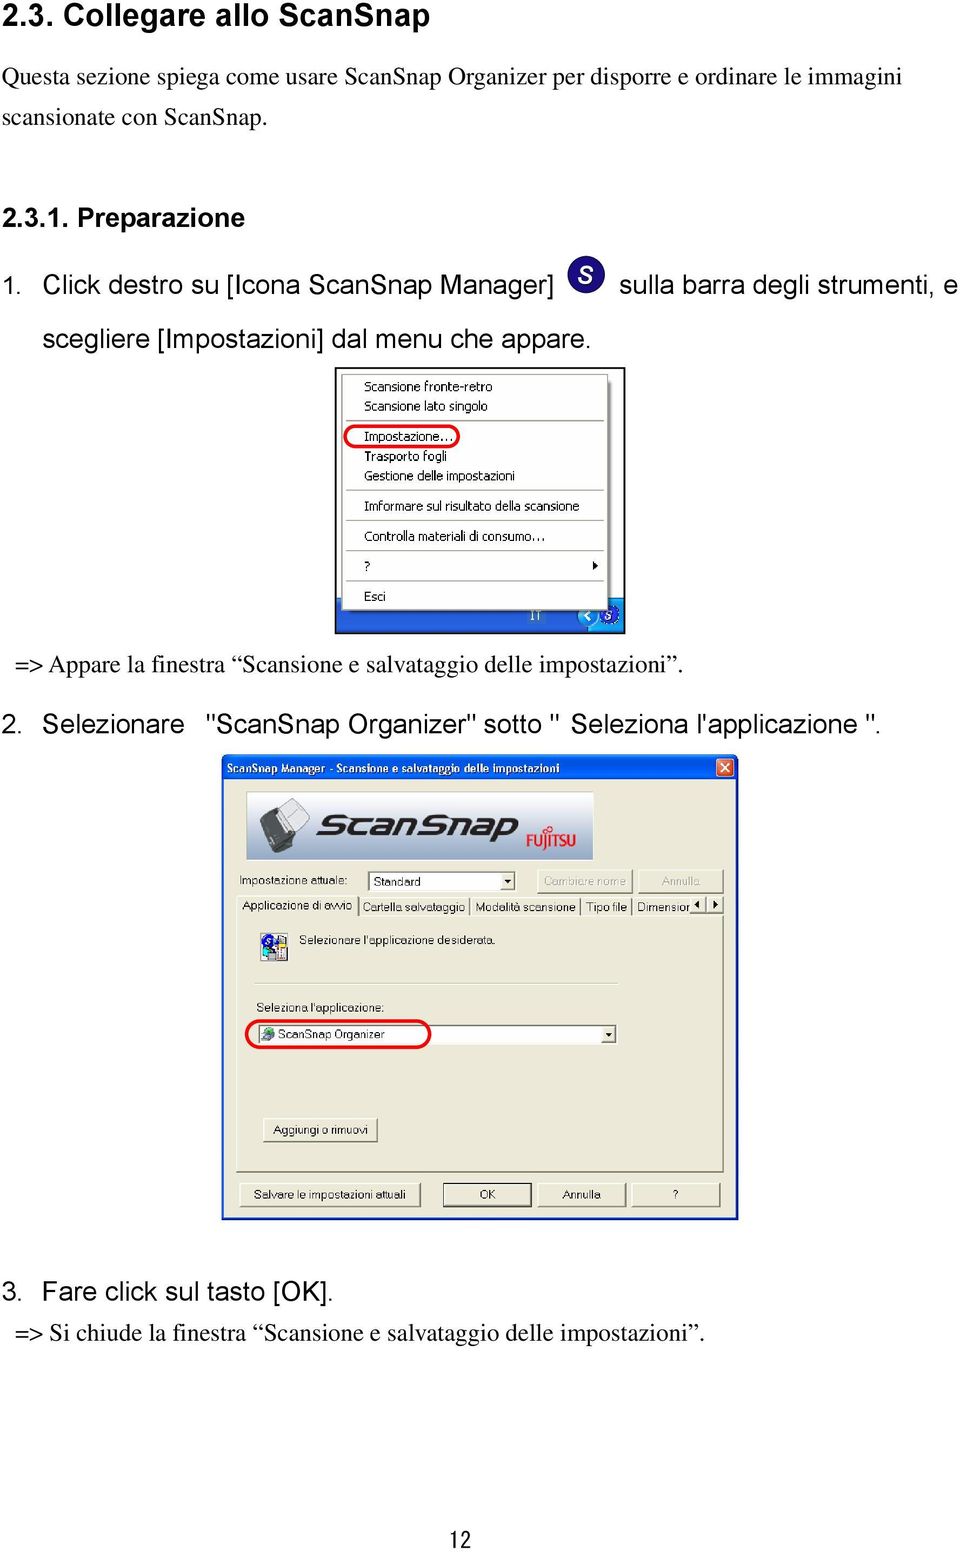 Click destro su [Icona ScanSnap Manager] sulla barra degli strumenti, e scegliere [Impostazioni] dal menu che appare.